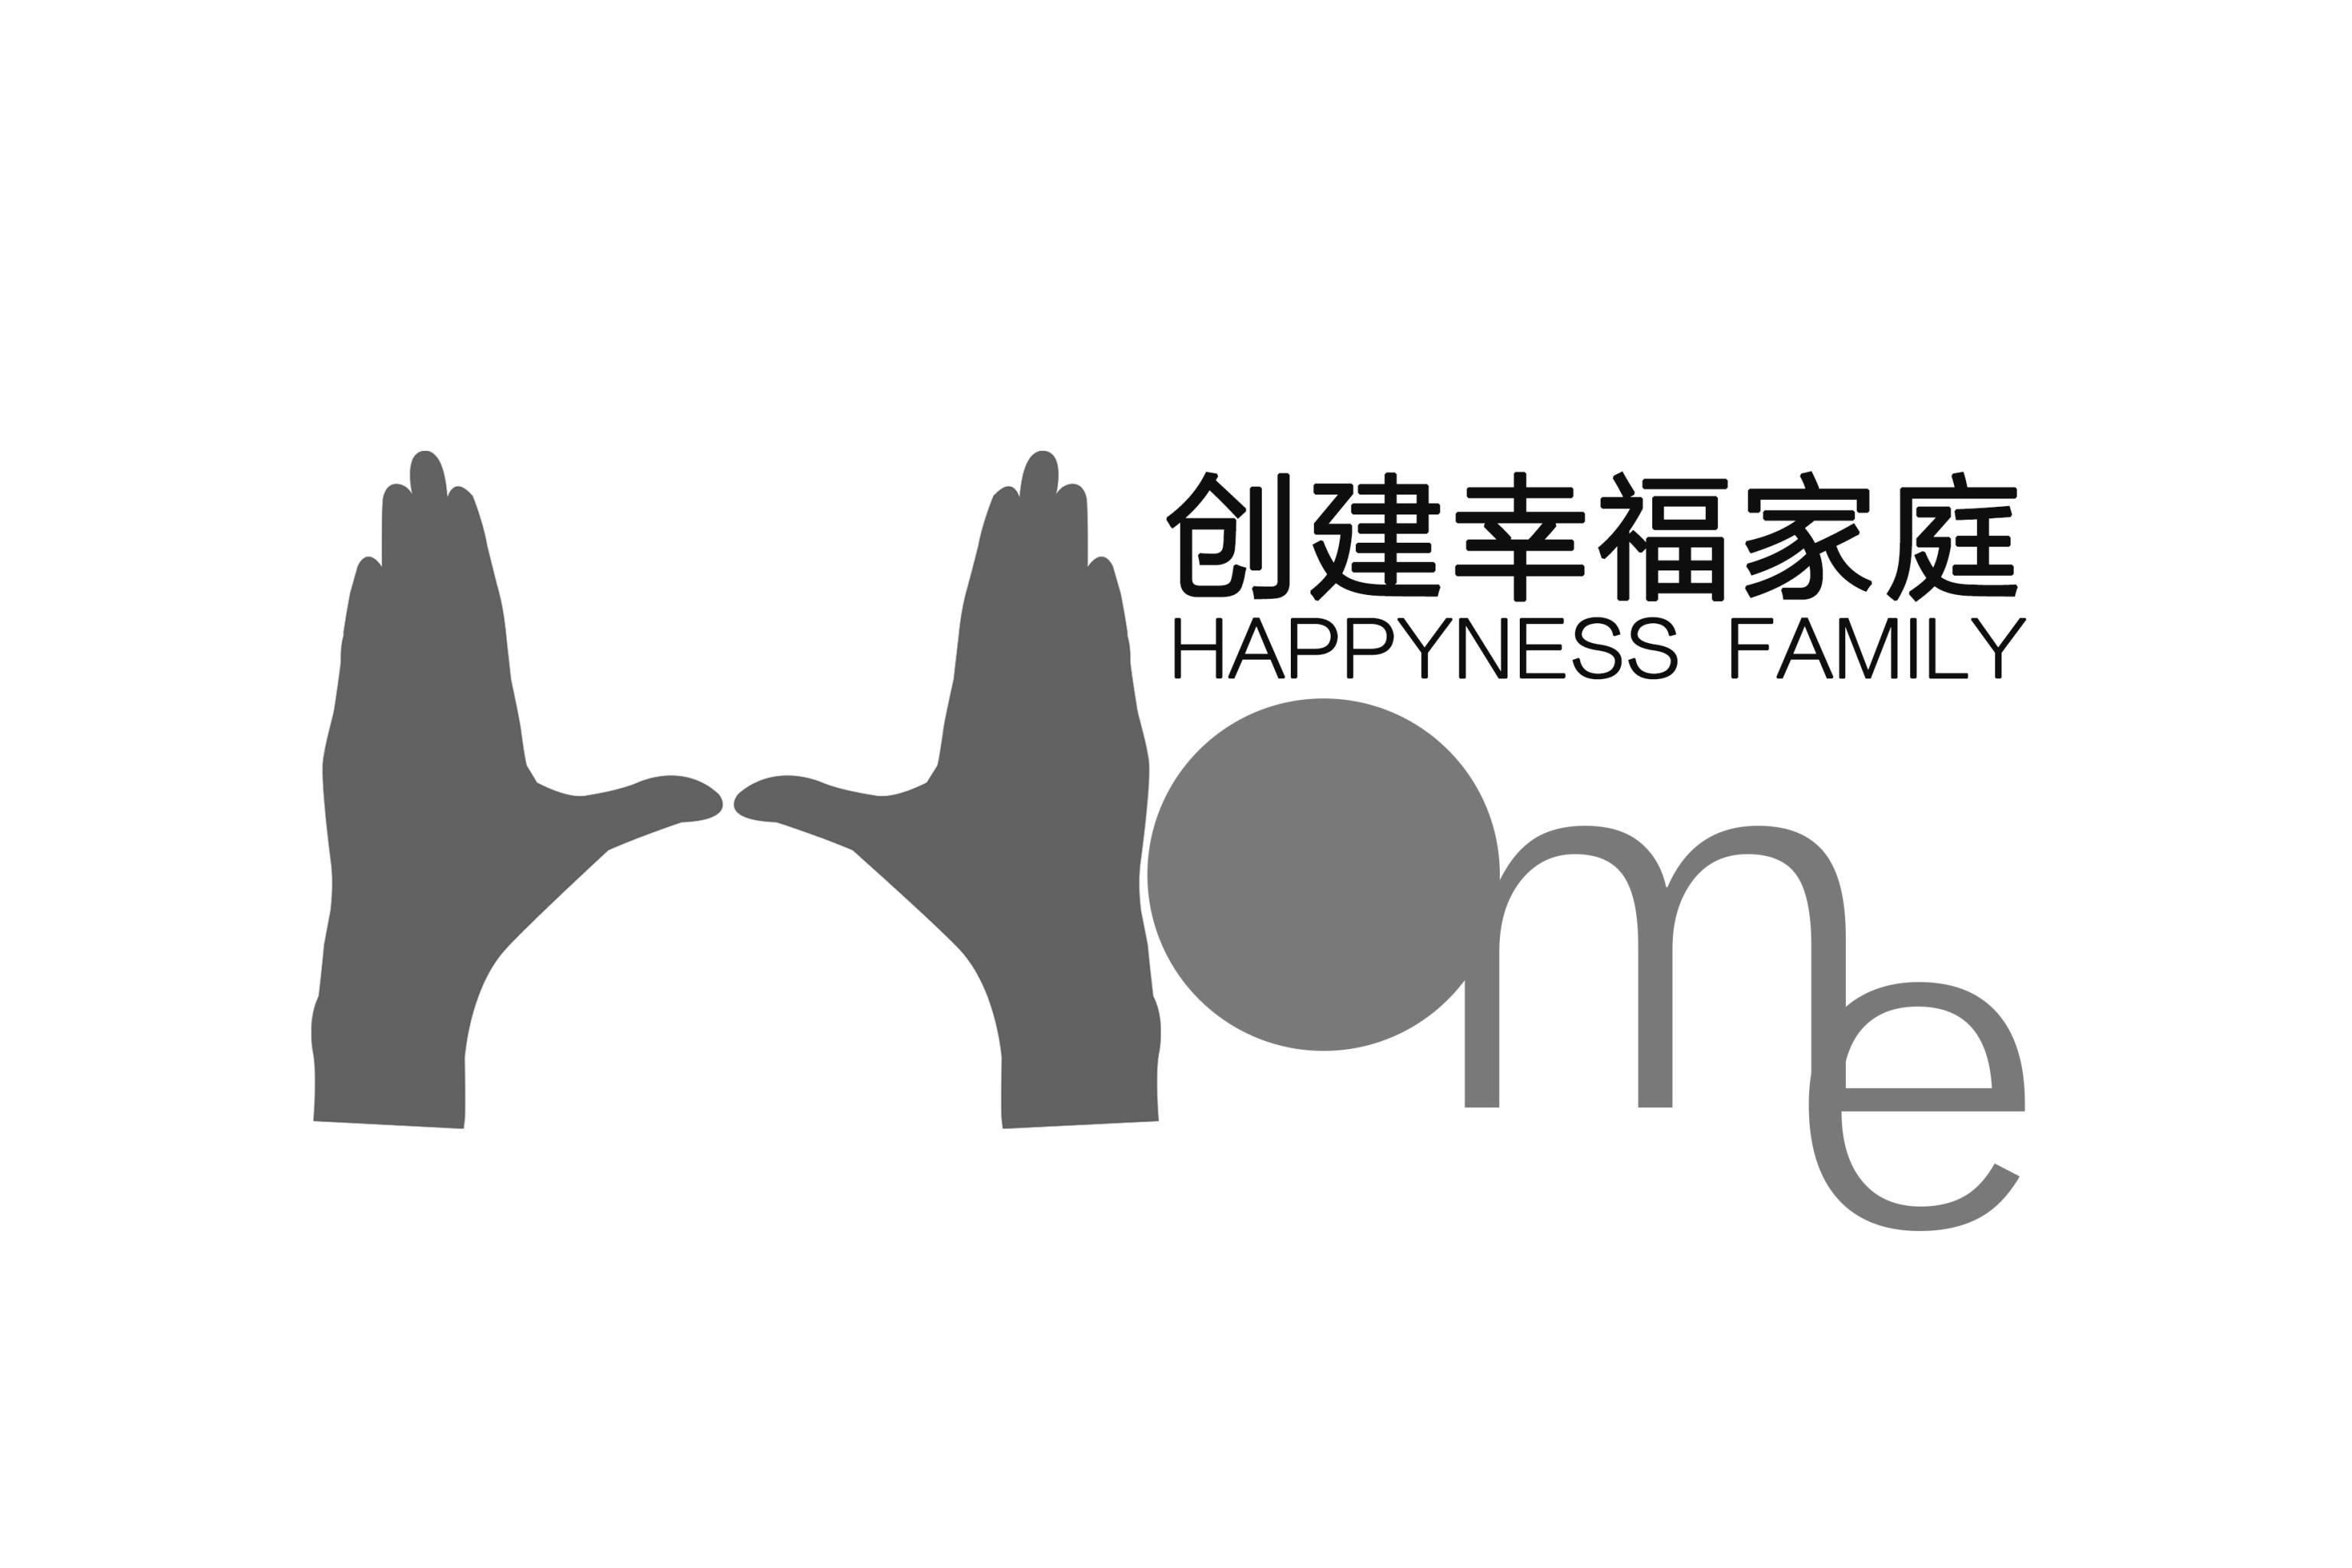 创建幸福家庭活动logo